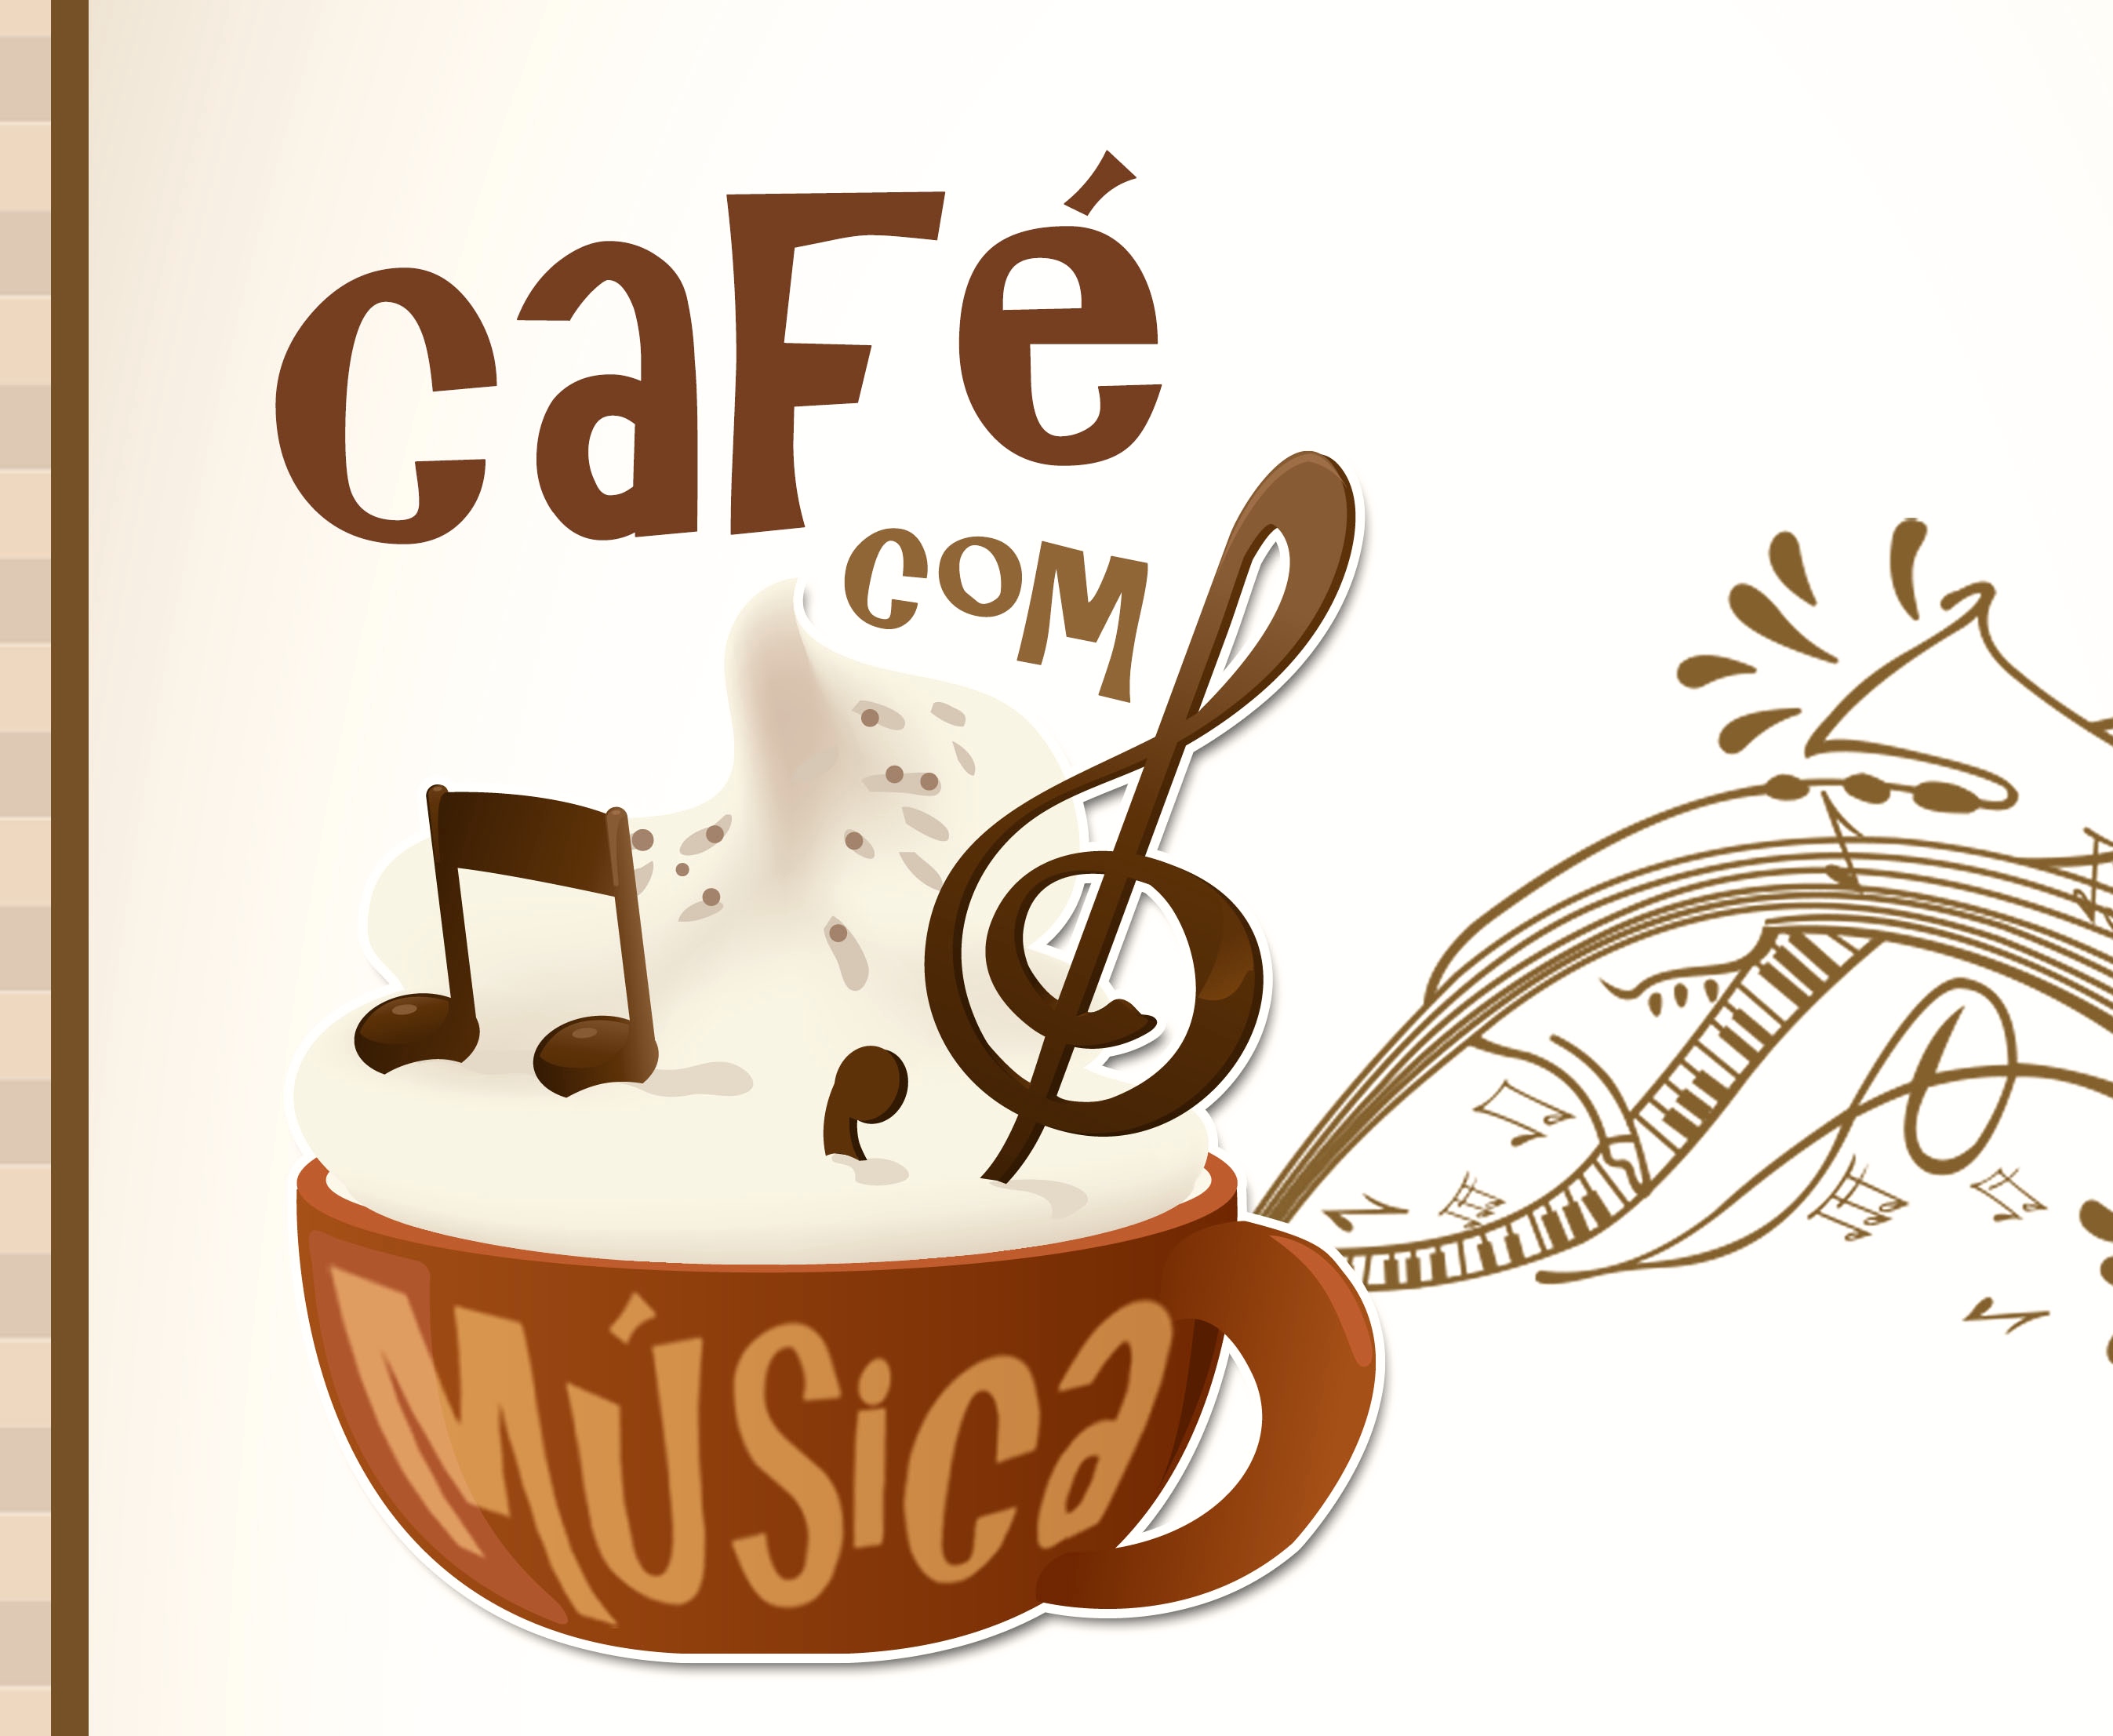 Um café e um Risco  Jogos, música, acção!